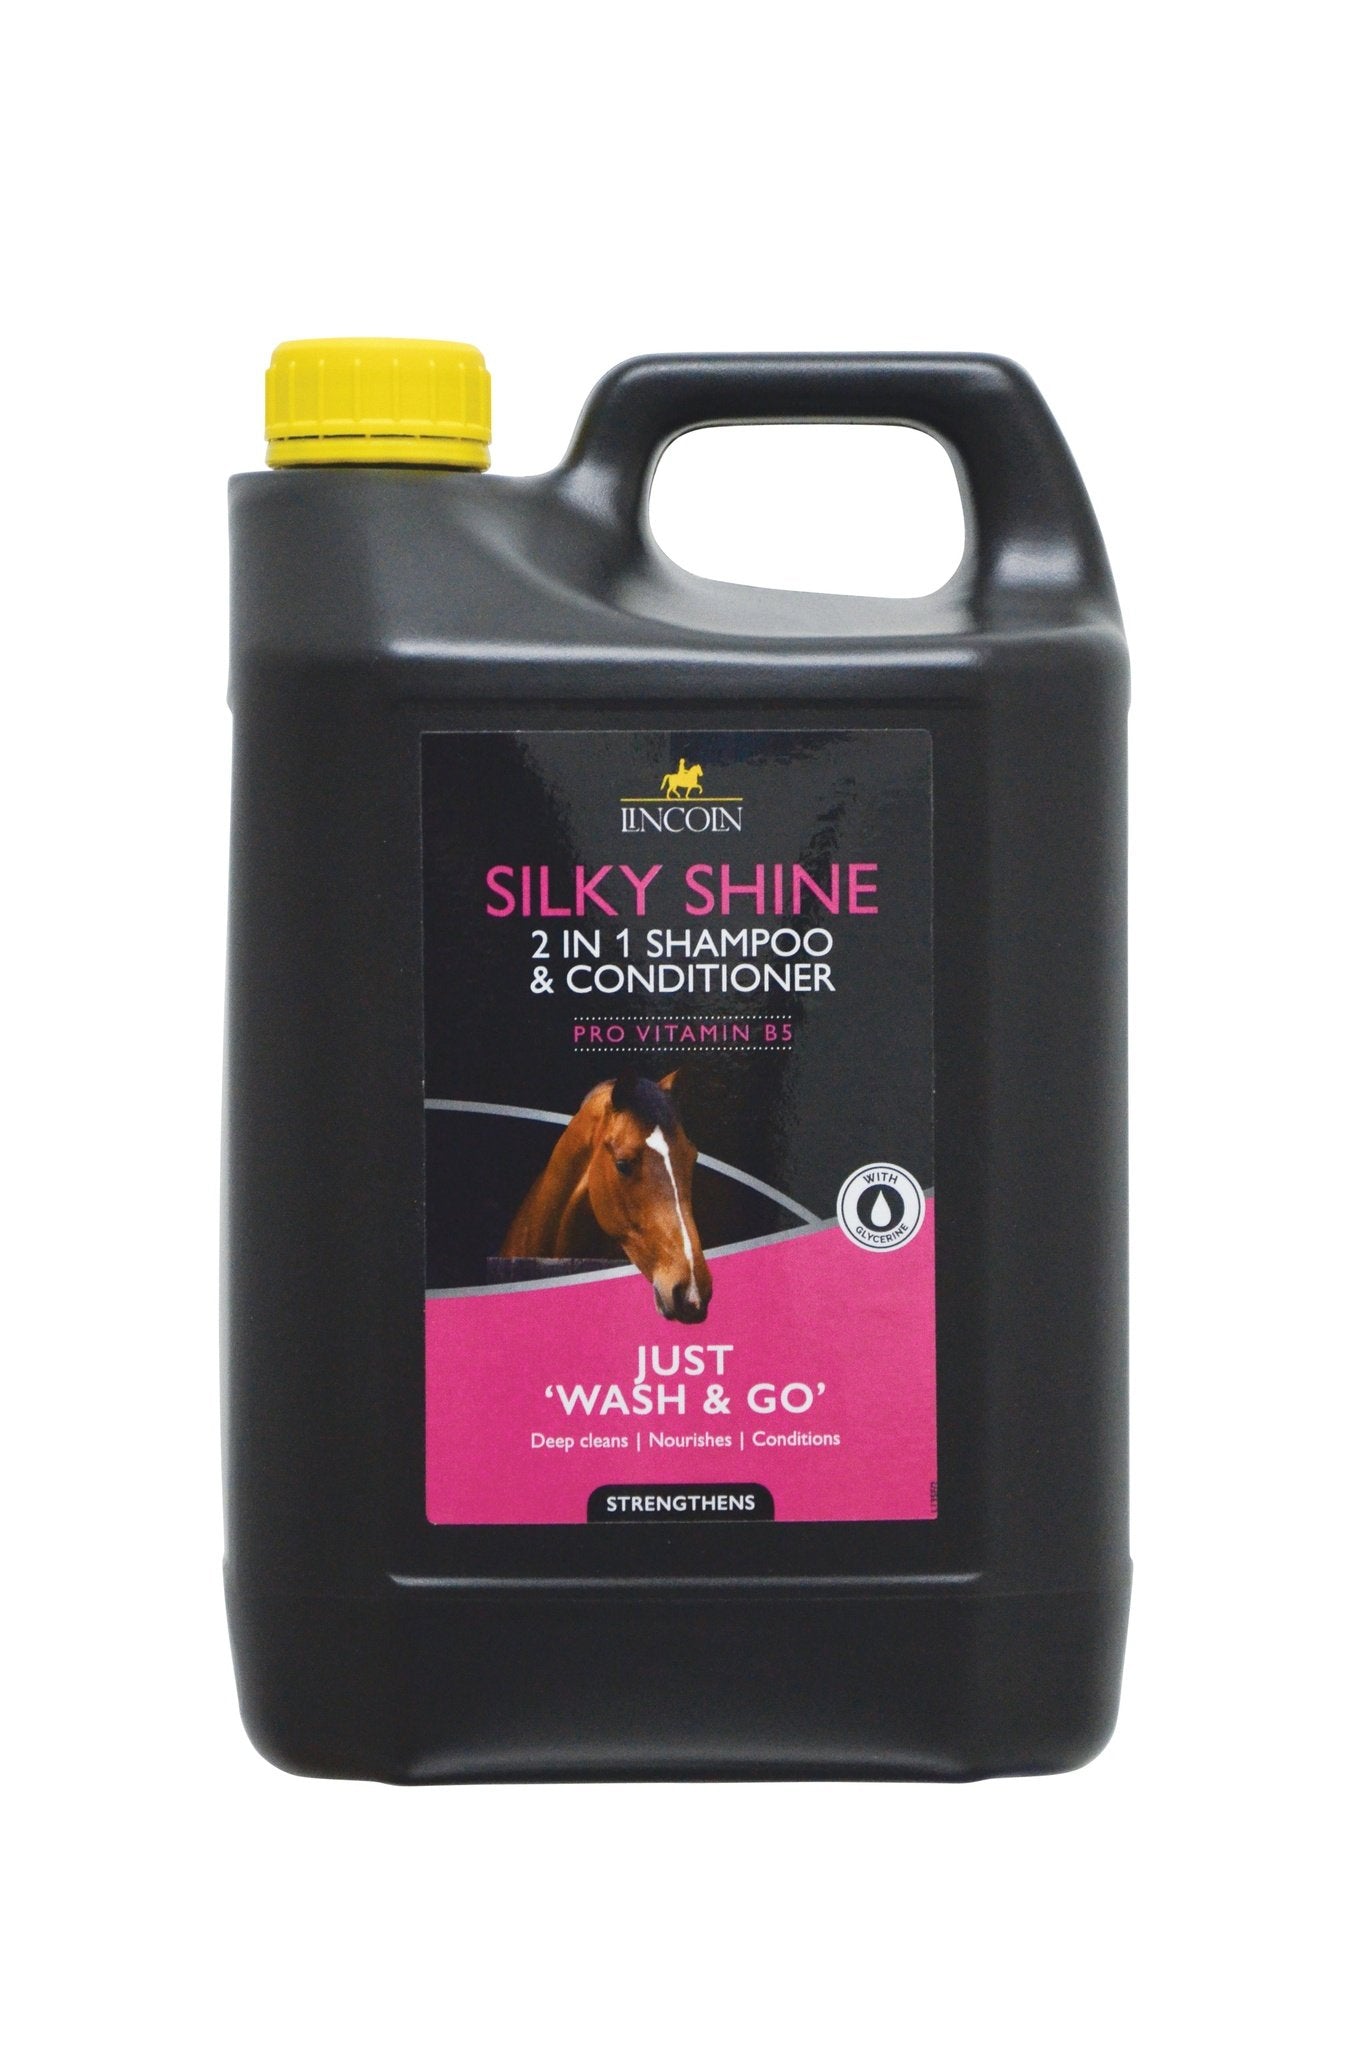 Lincoln Silky Shine 2 in 1 Shampoo and Conditioner - 4 litre - Breeches.com